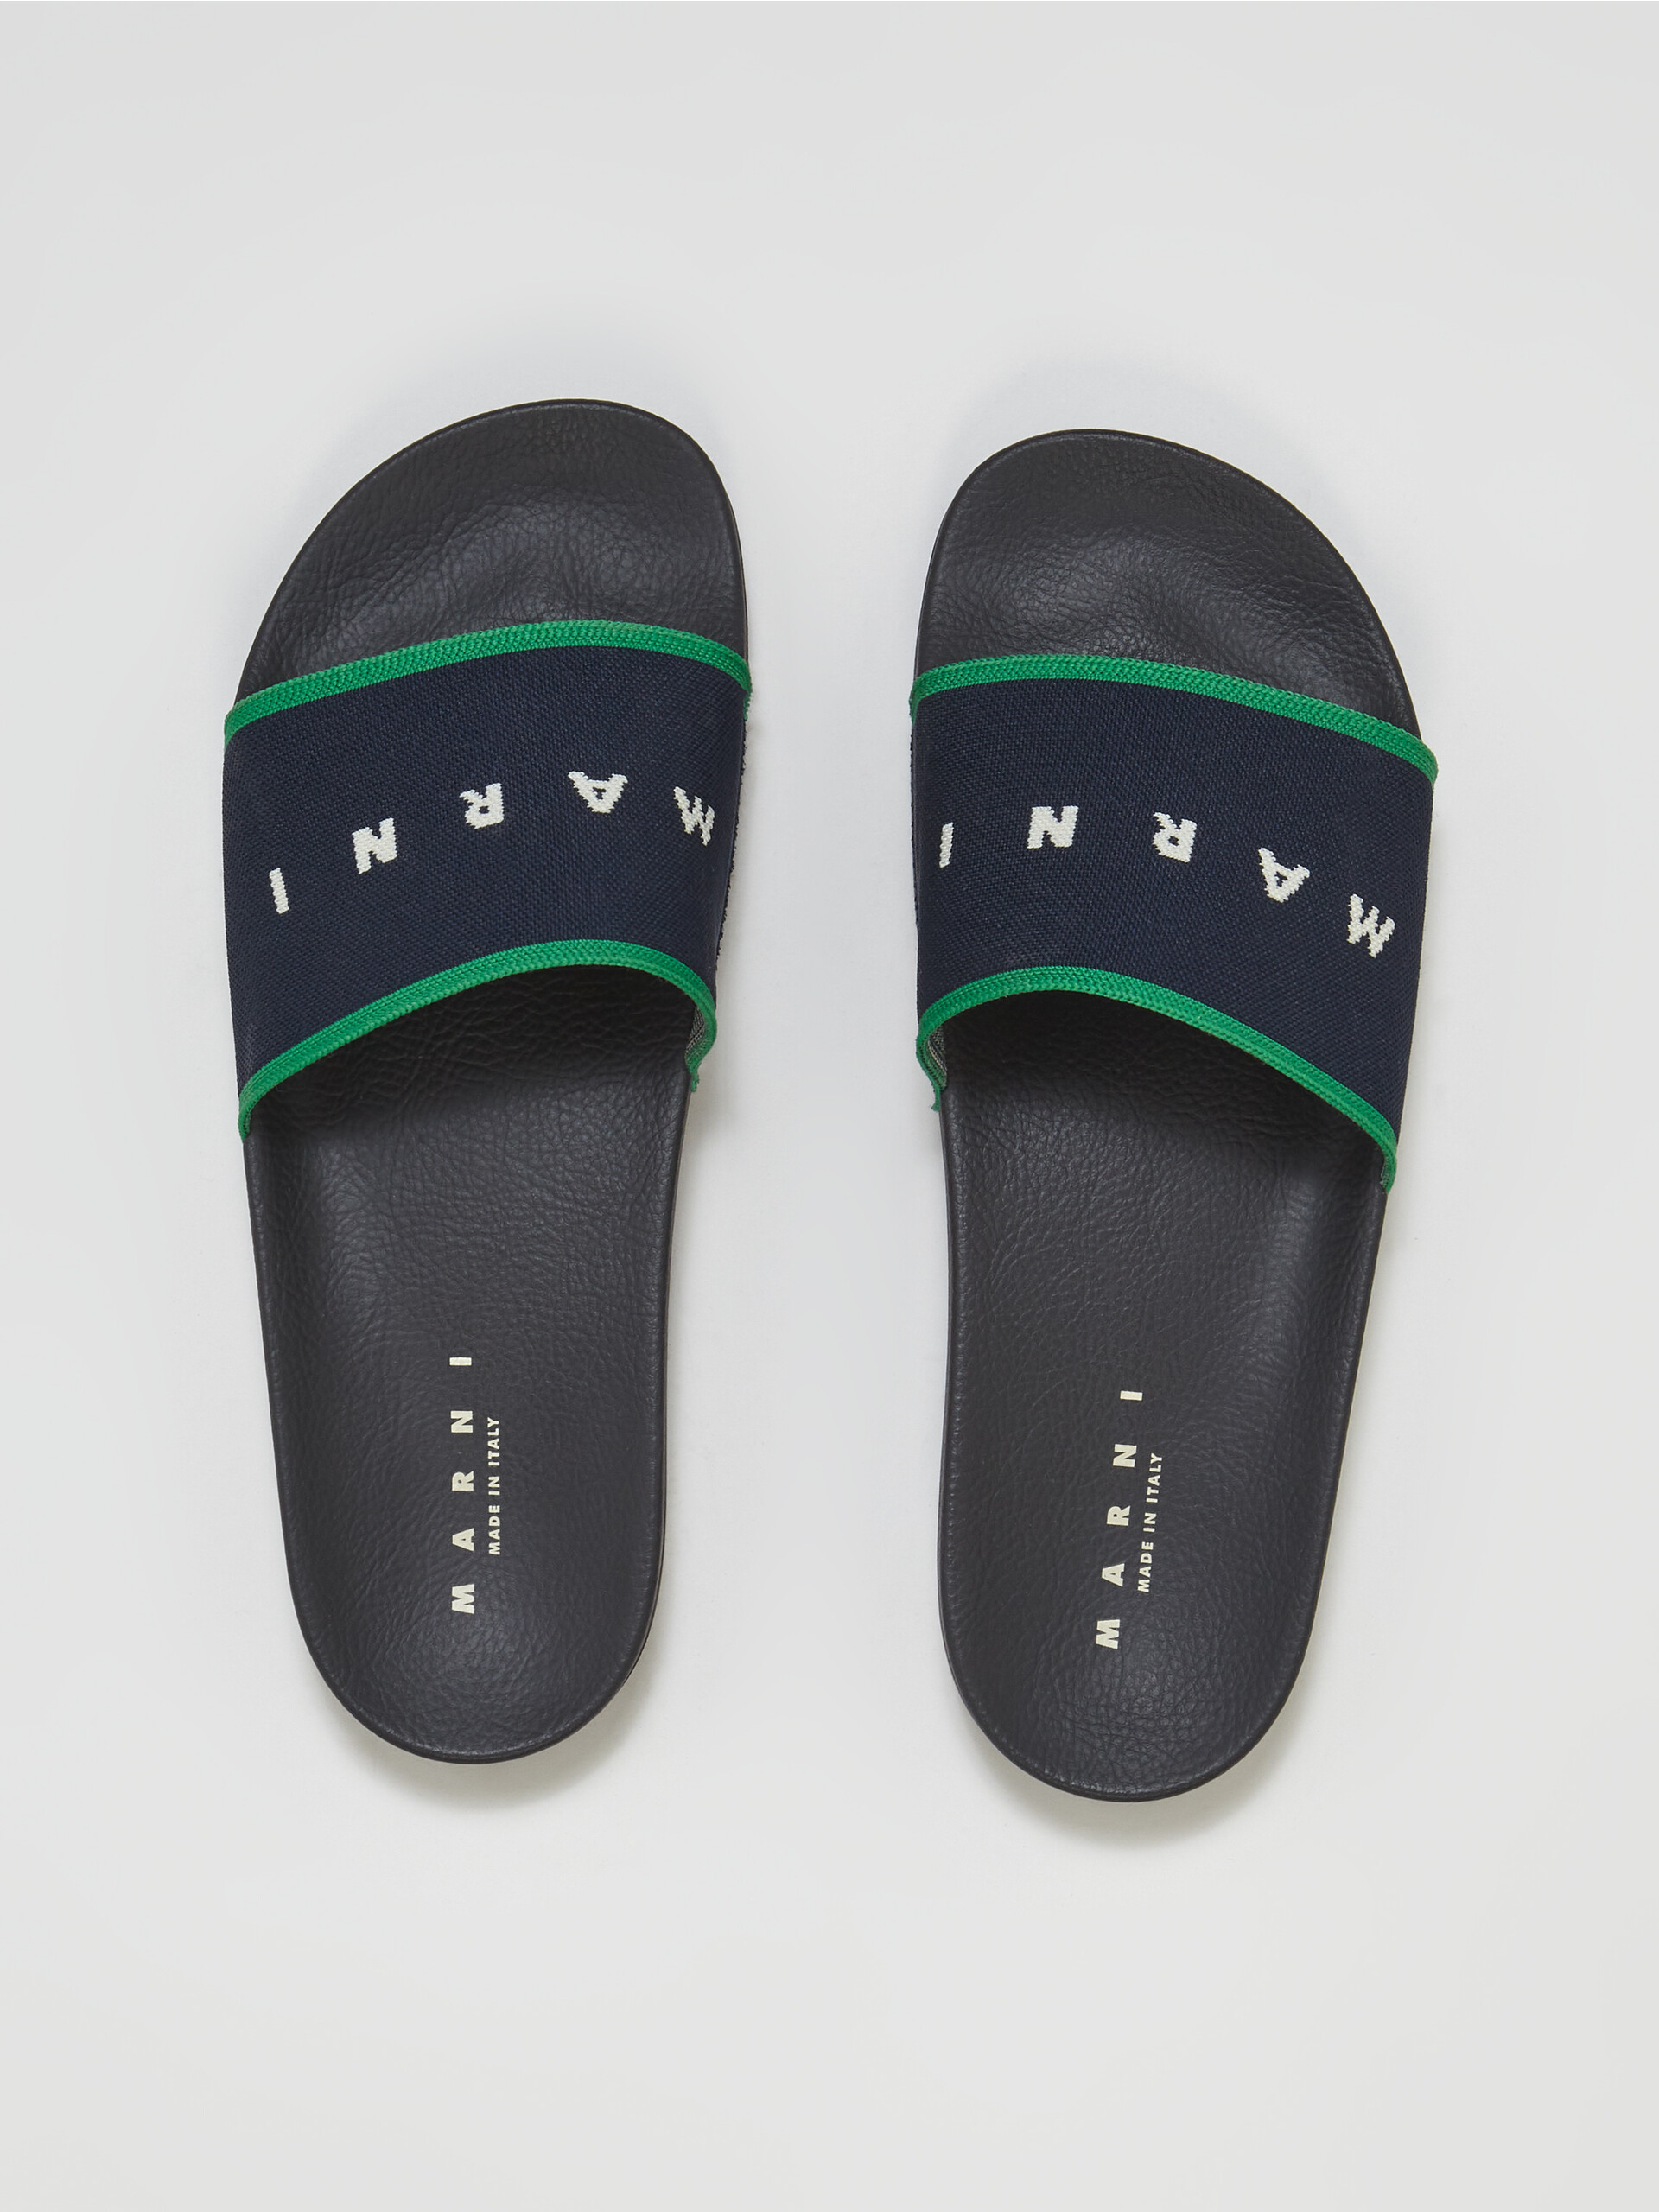 Blue black logo jacquard rubber slide - Sandals - Image 4